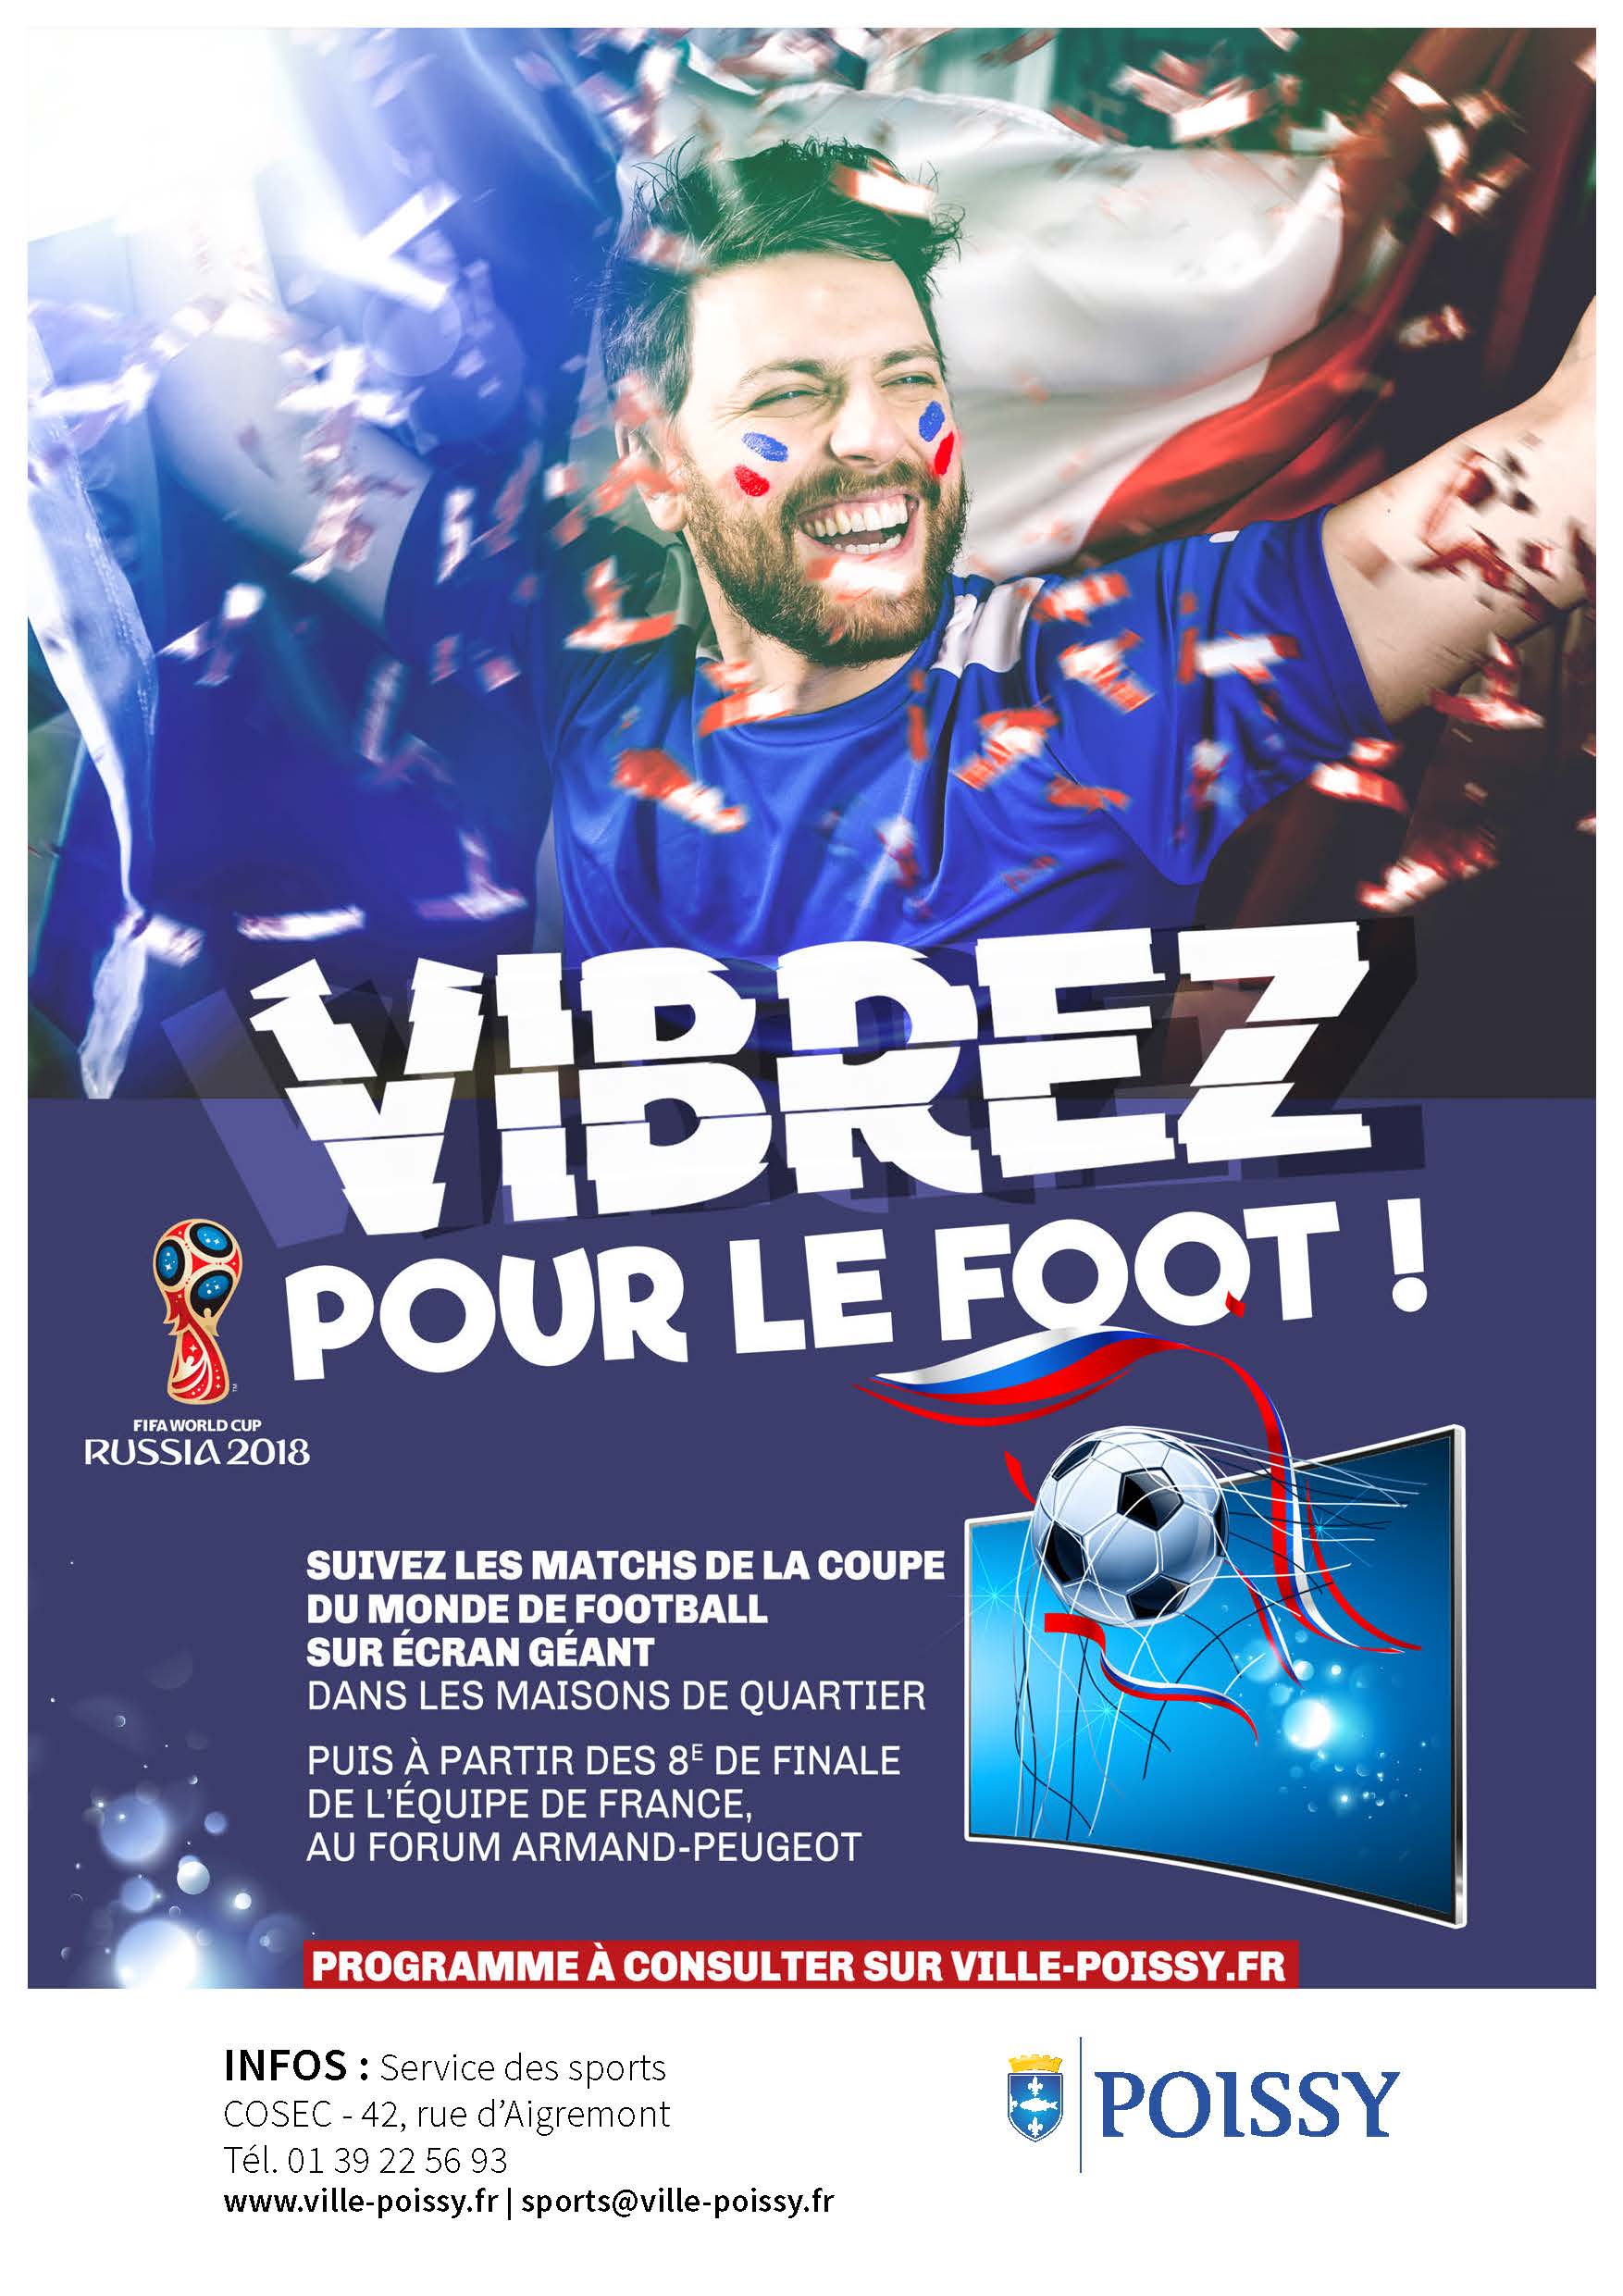 light Aff Vibrez foot promotion ecran géant Poissy